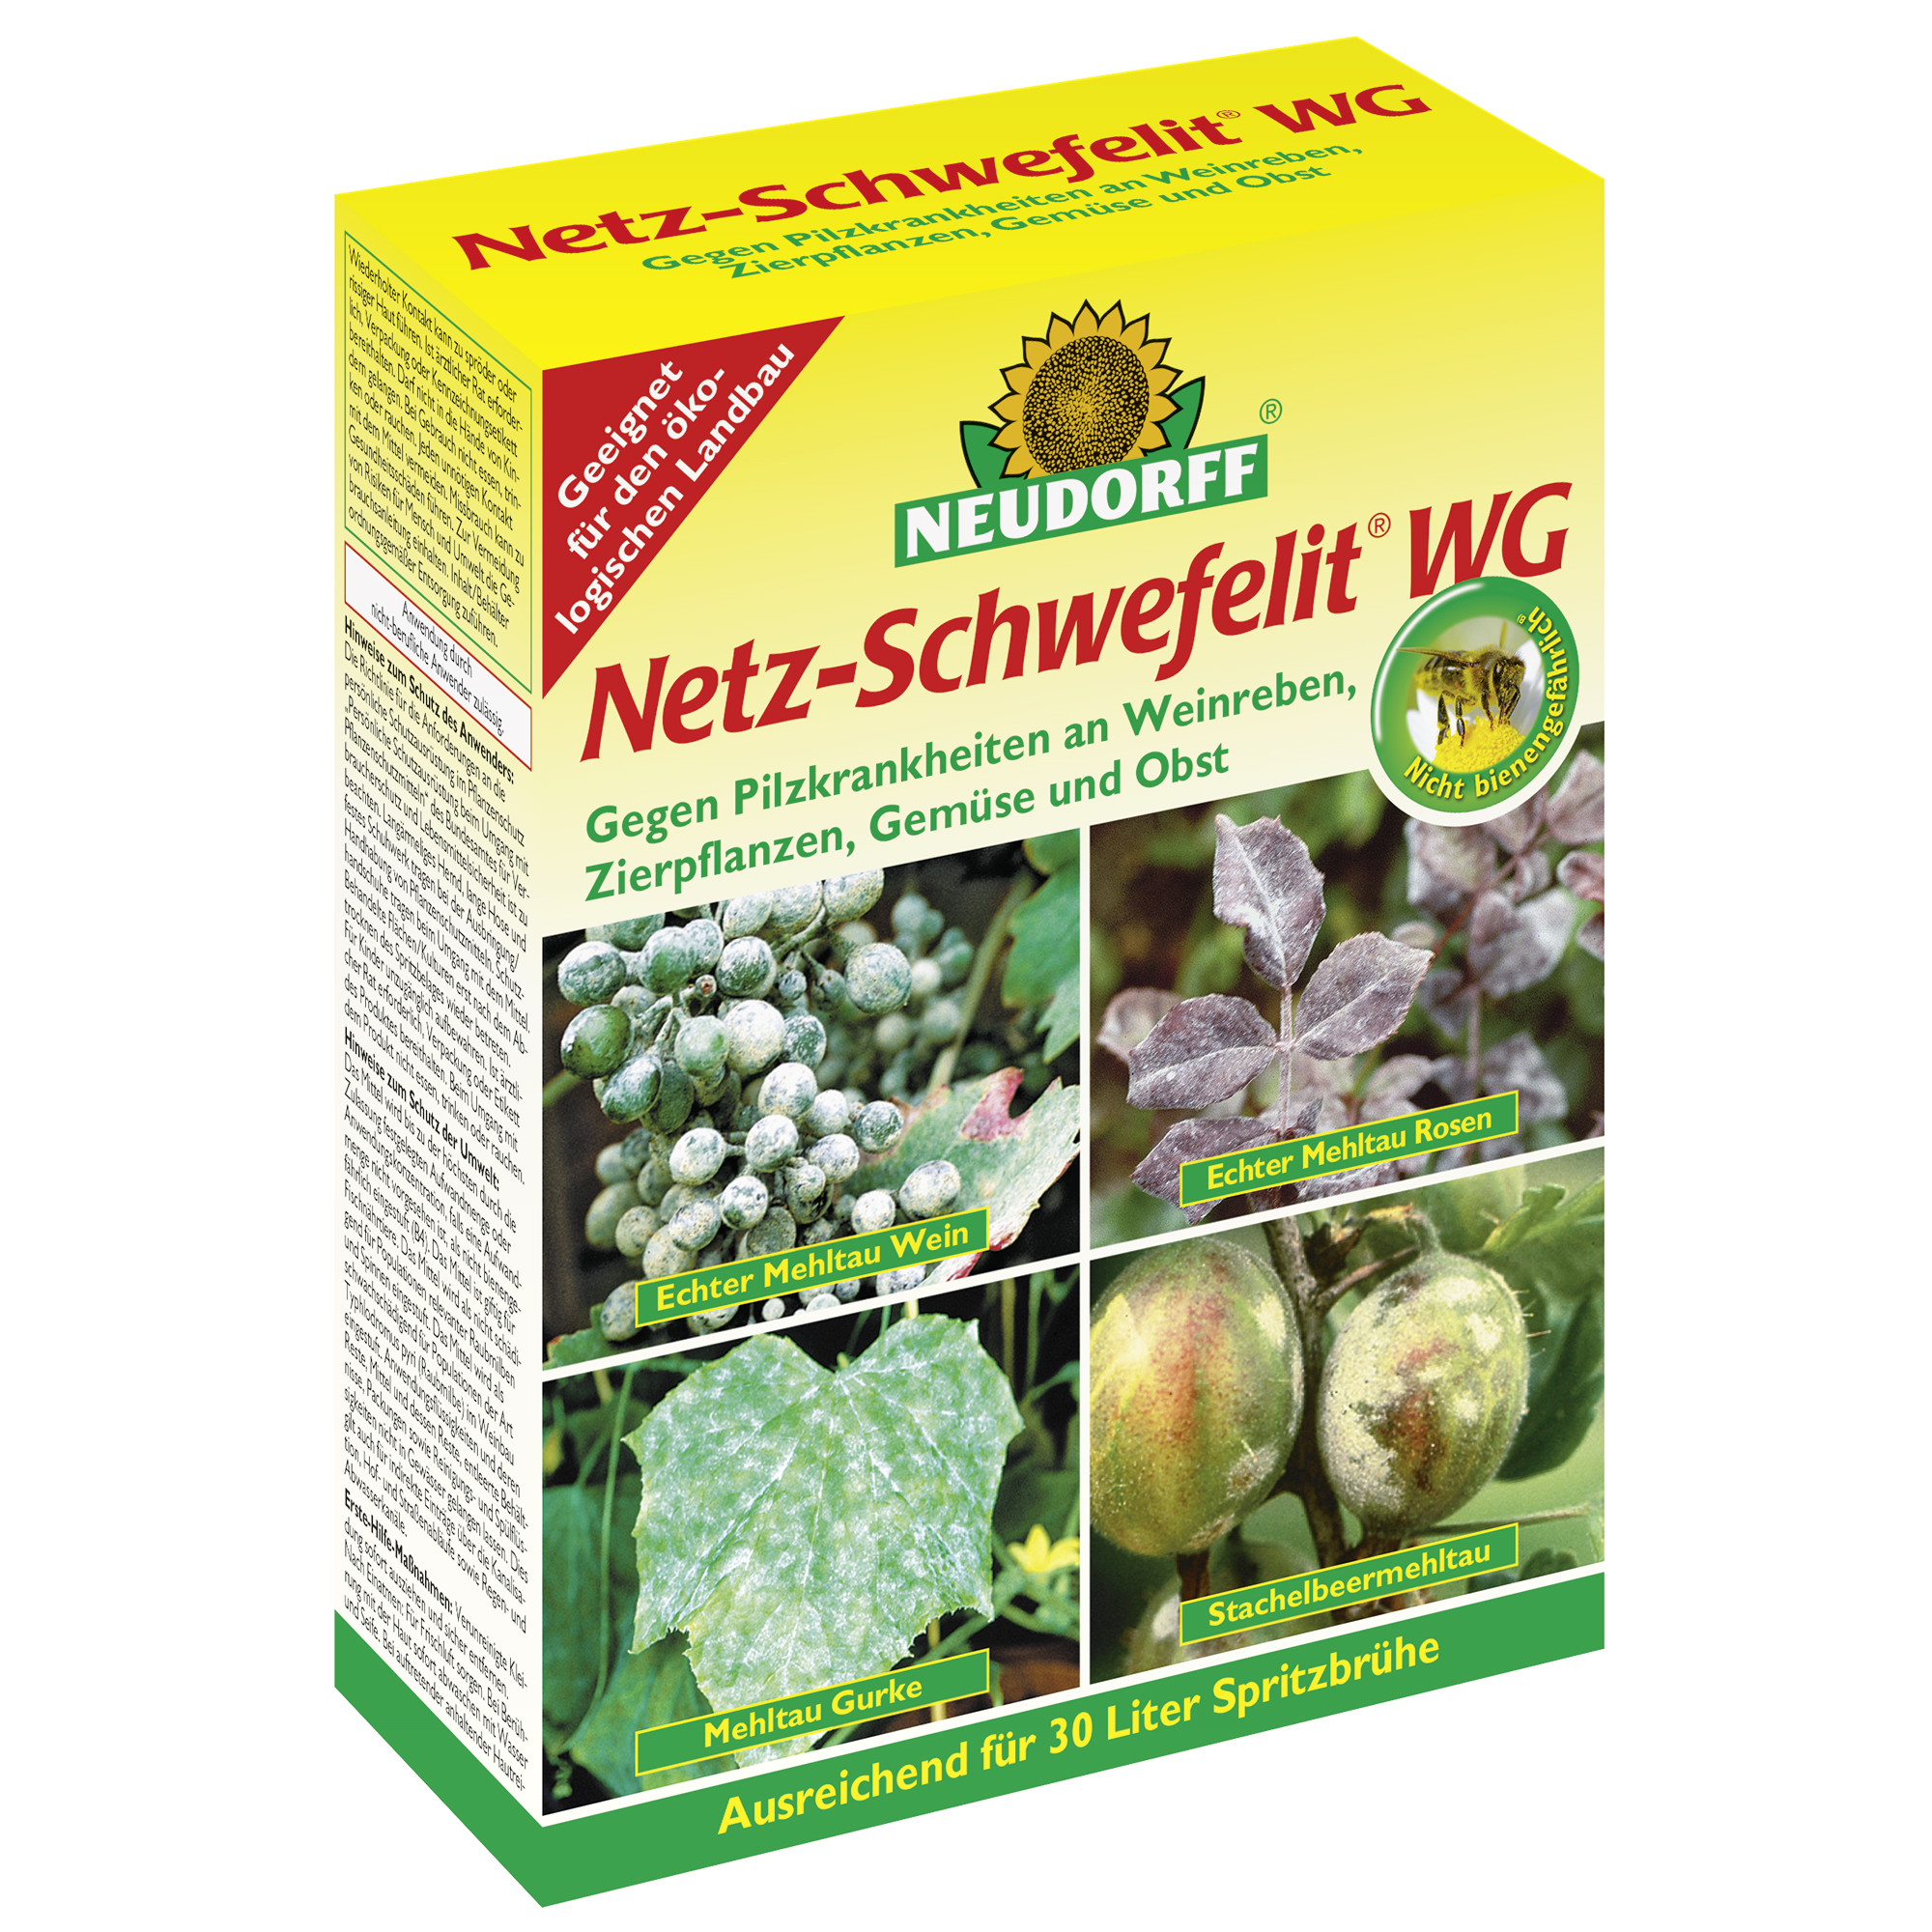 Netz-Schwefelit WG 75 g + product picture